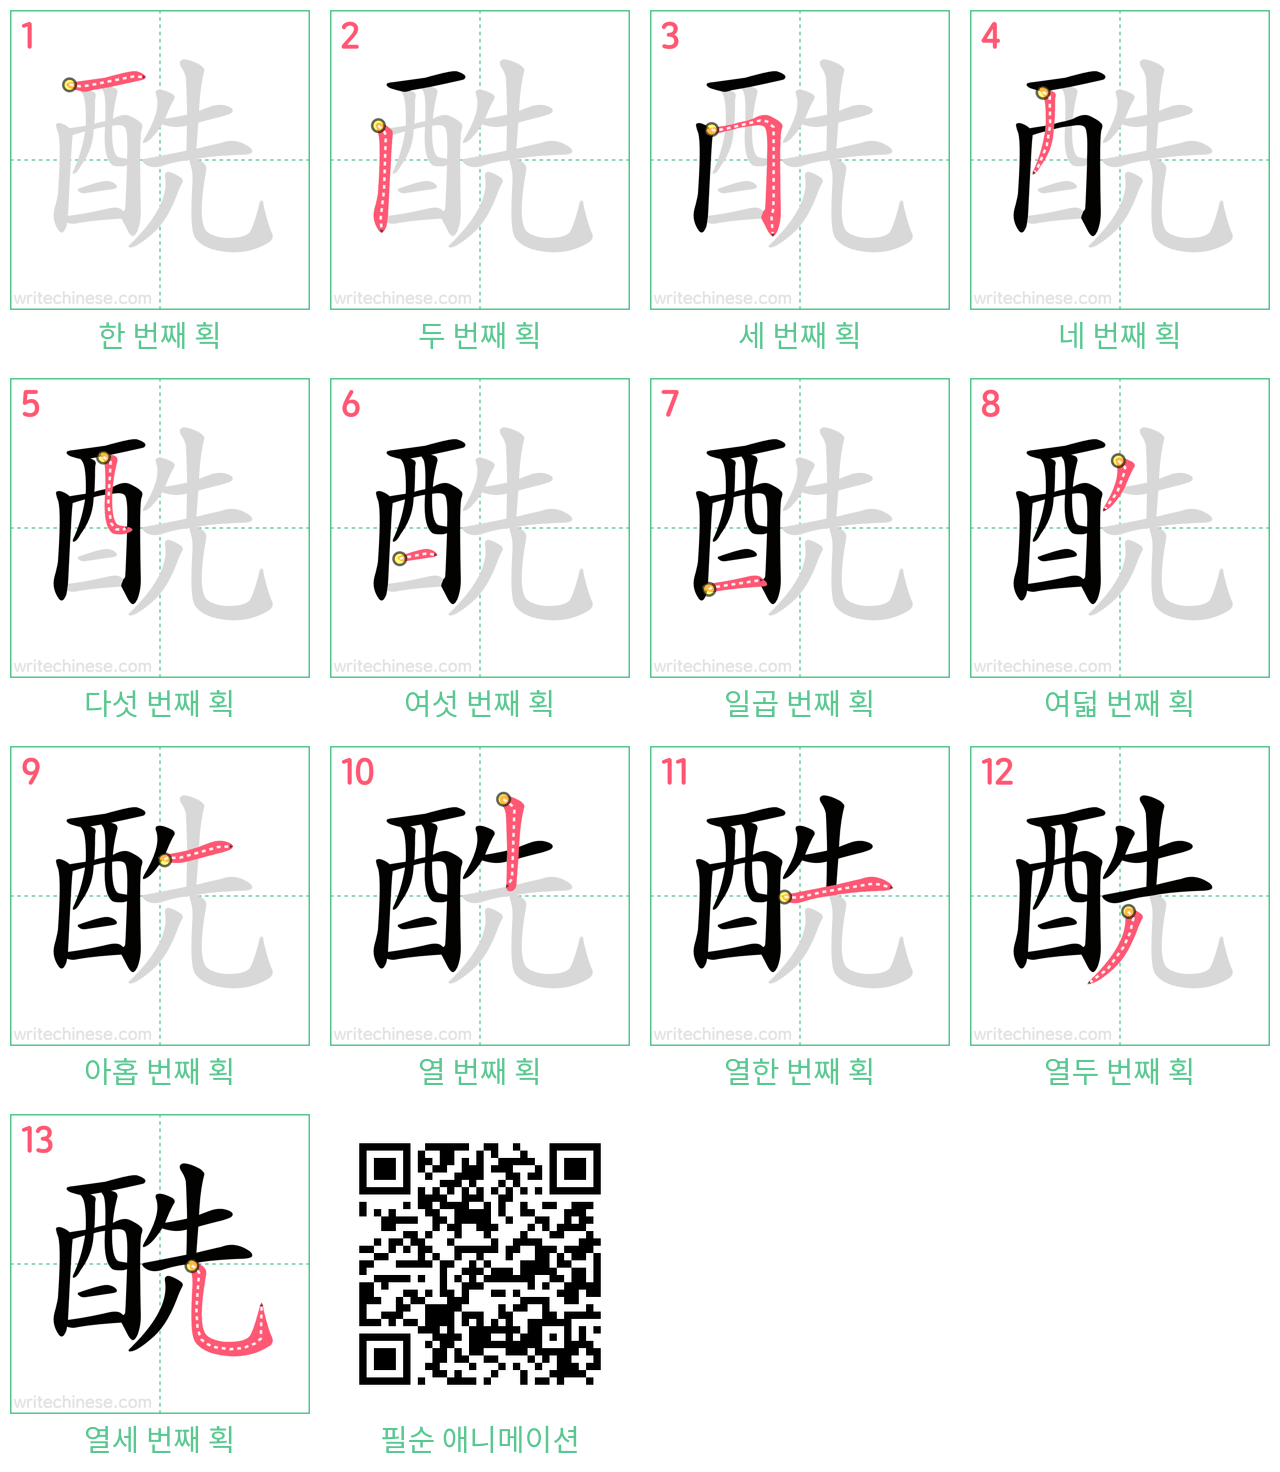 酰 step-by-step stroke order diagrams